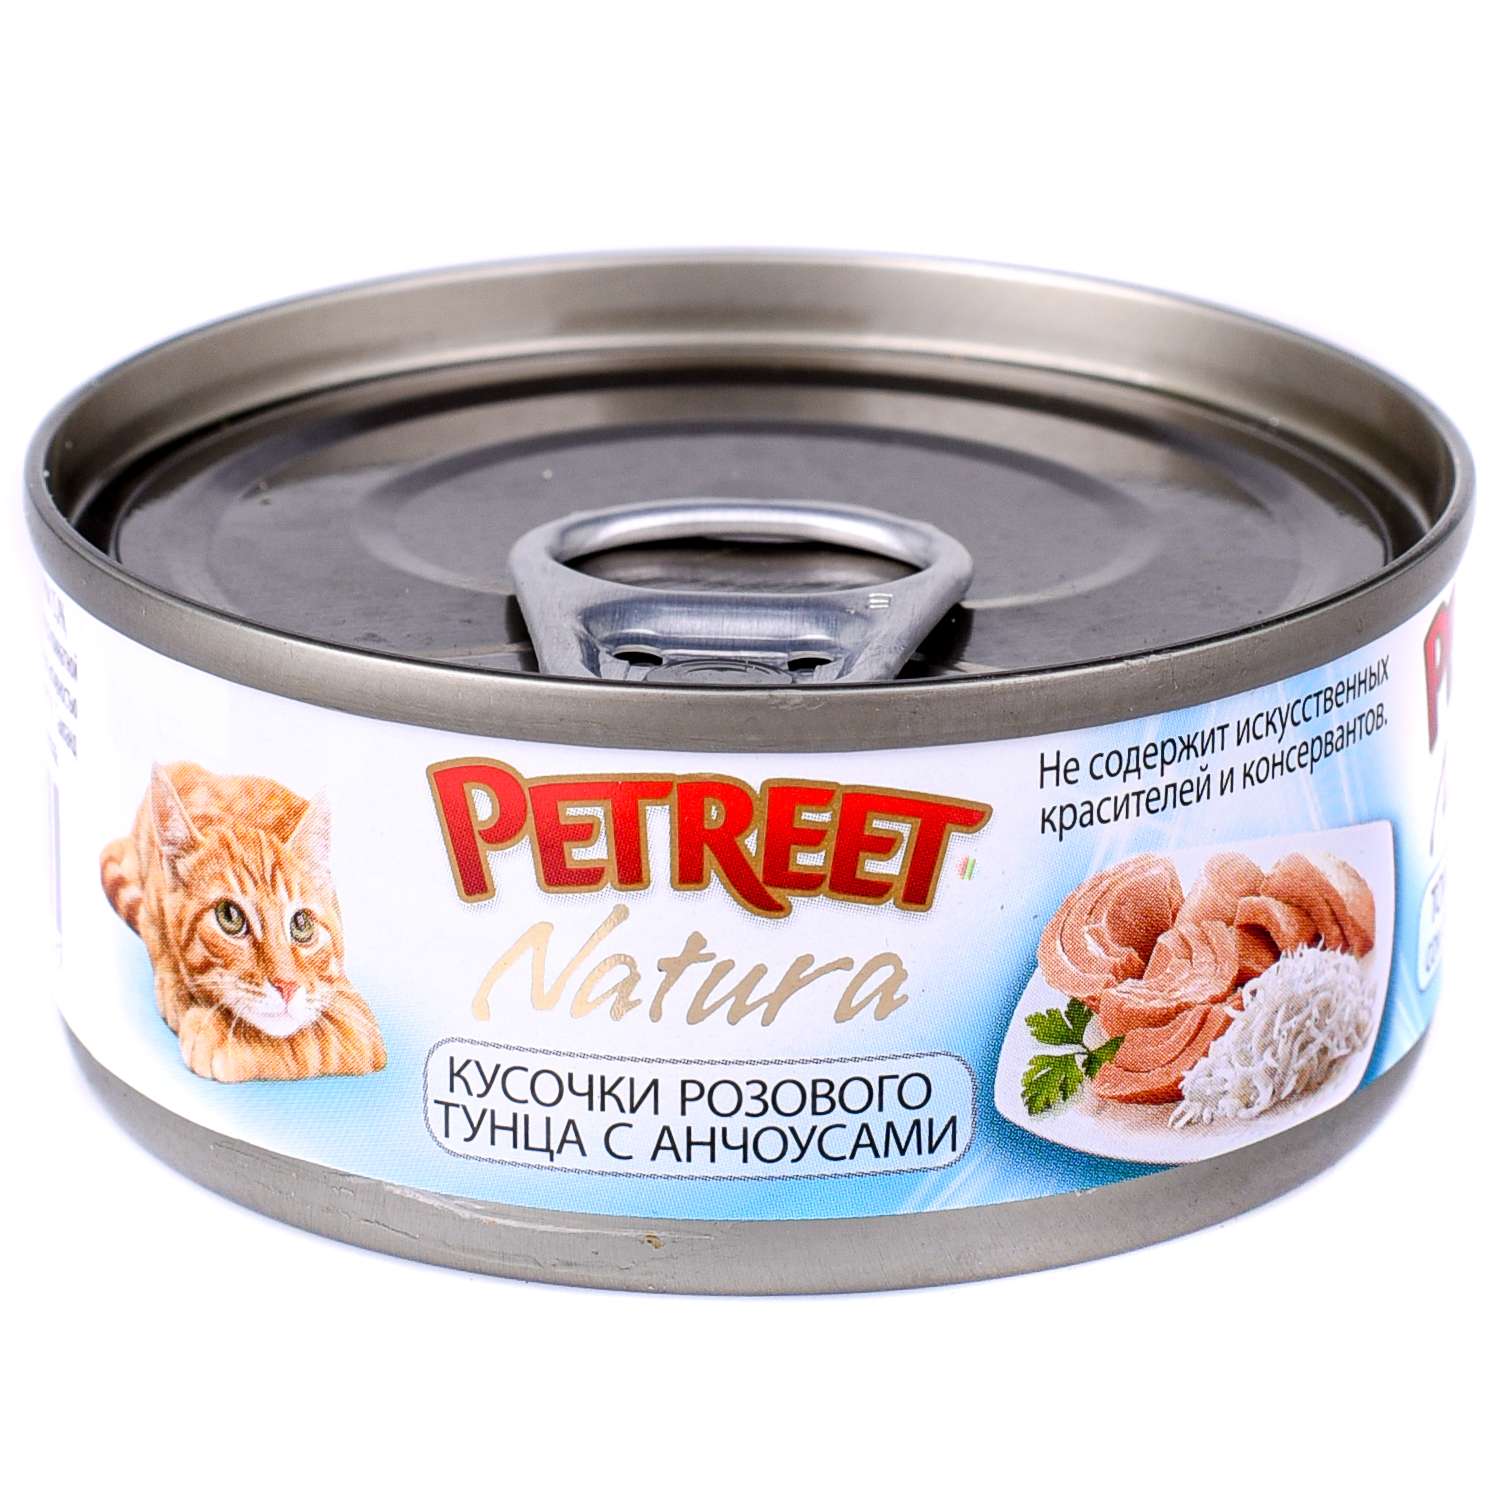 Корм влажный для кошек Petreet 70г кусочки розового тунца с анчоусами консервированный - фото 2